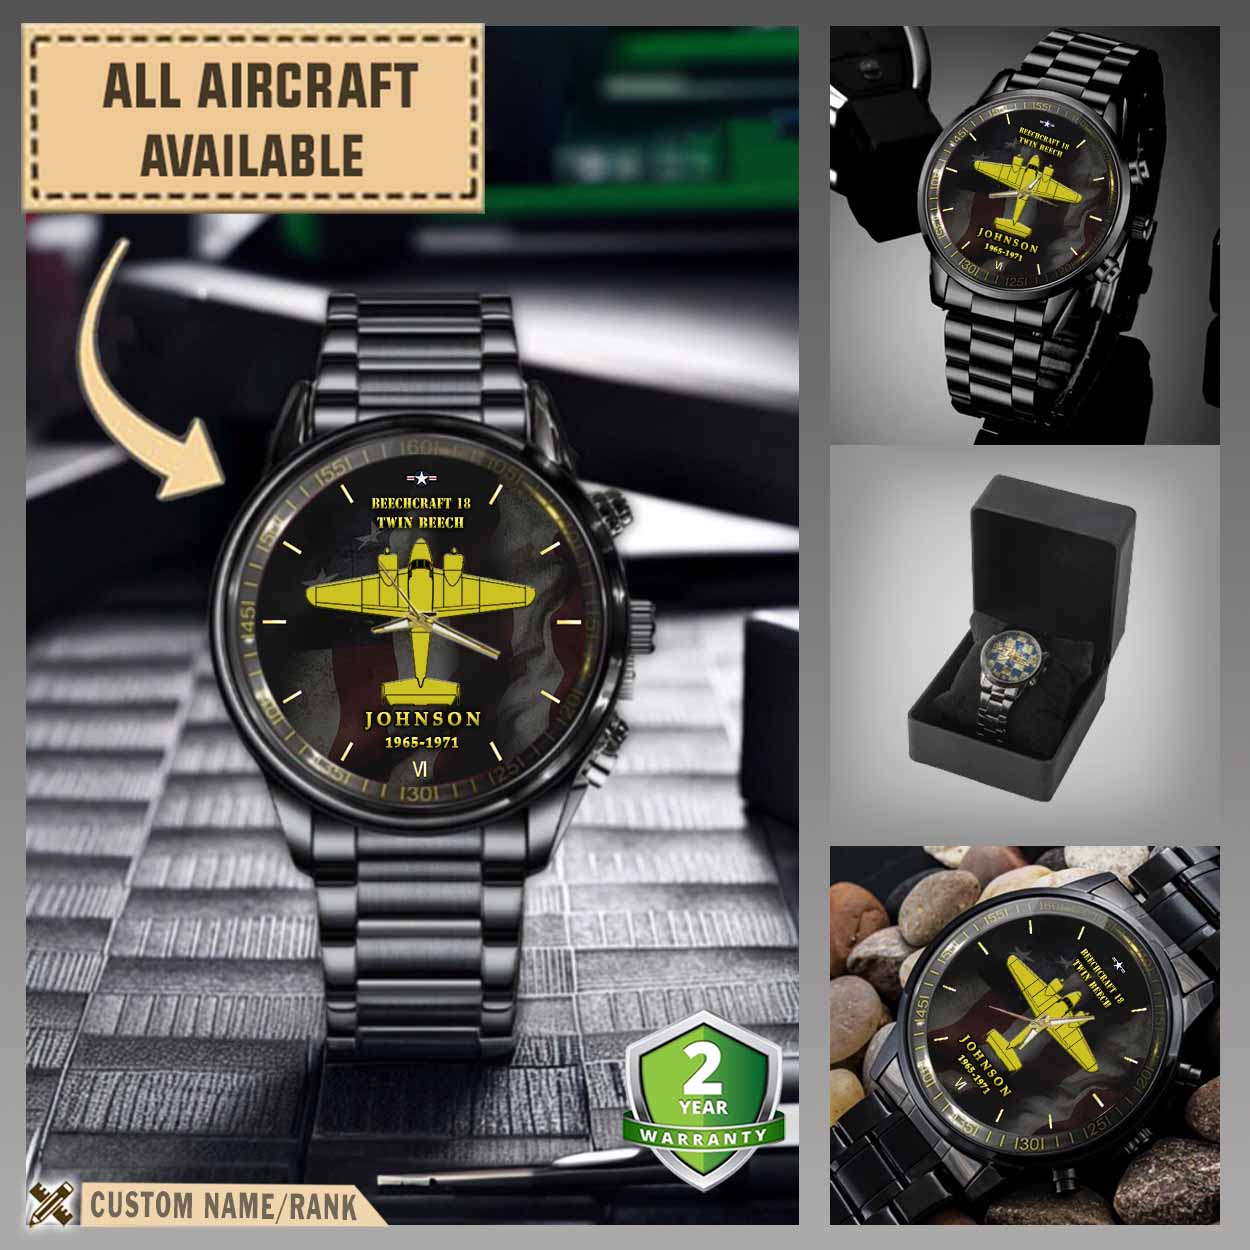 beechcraft model 18 twin beech c45aircraft black wrist watch 8rrb9